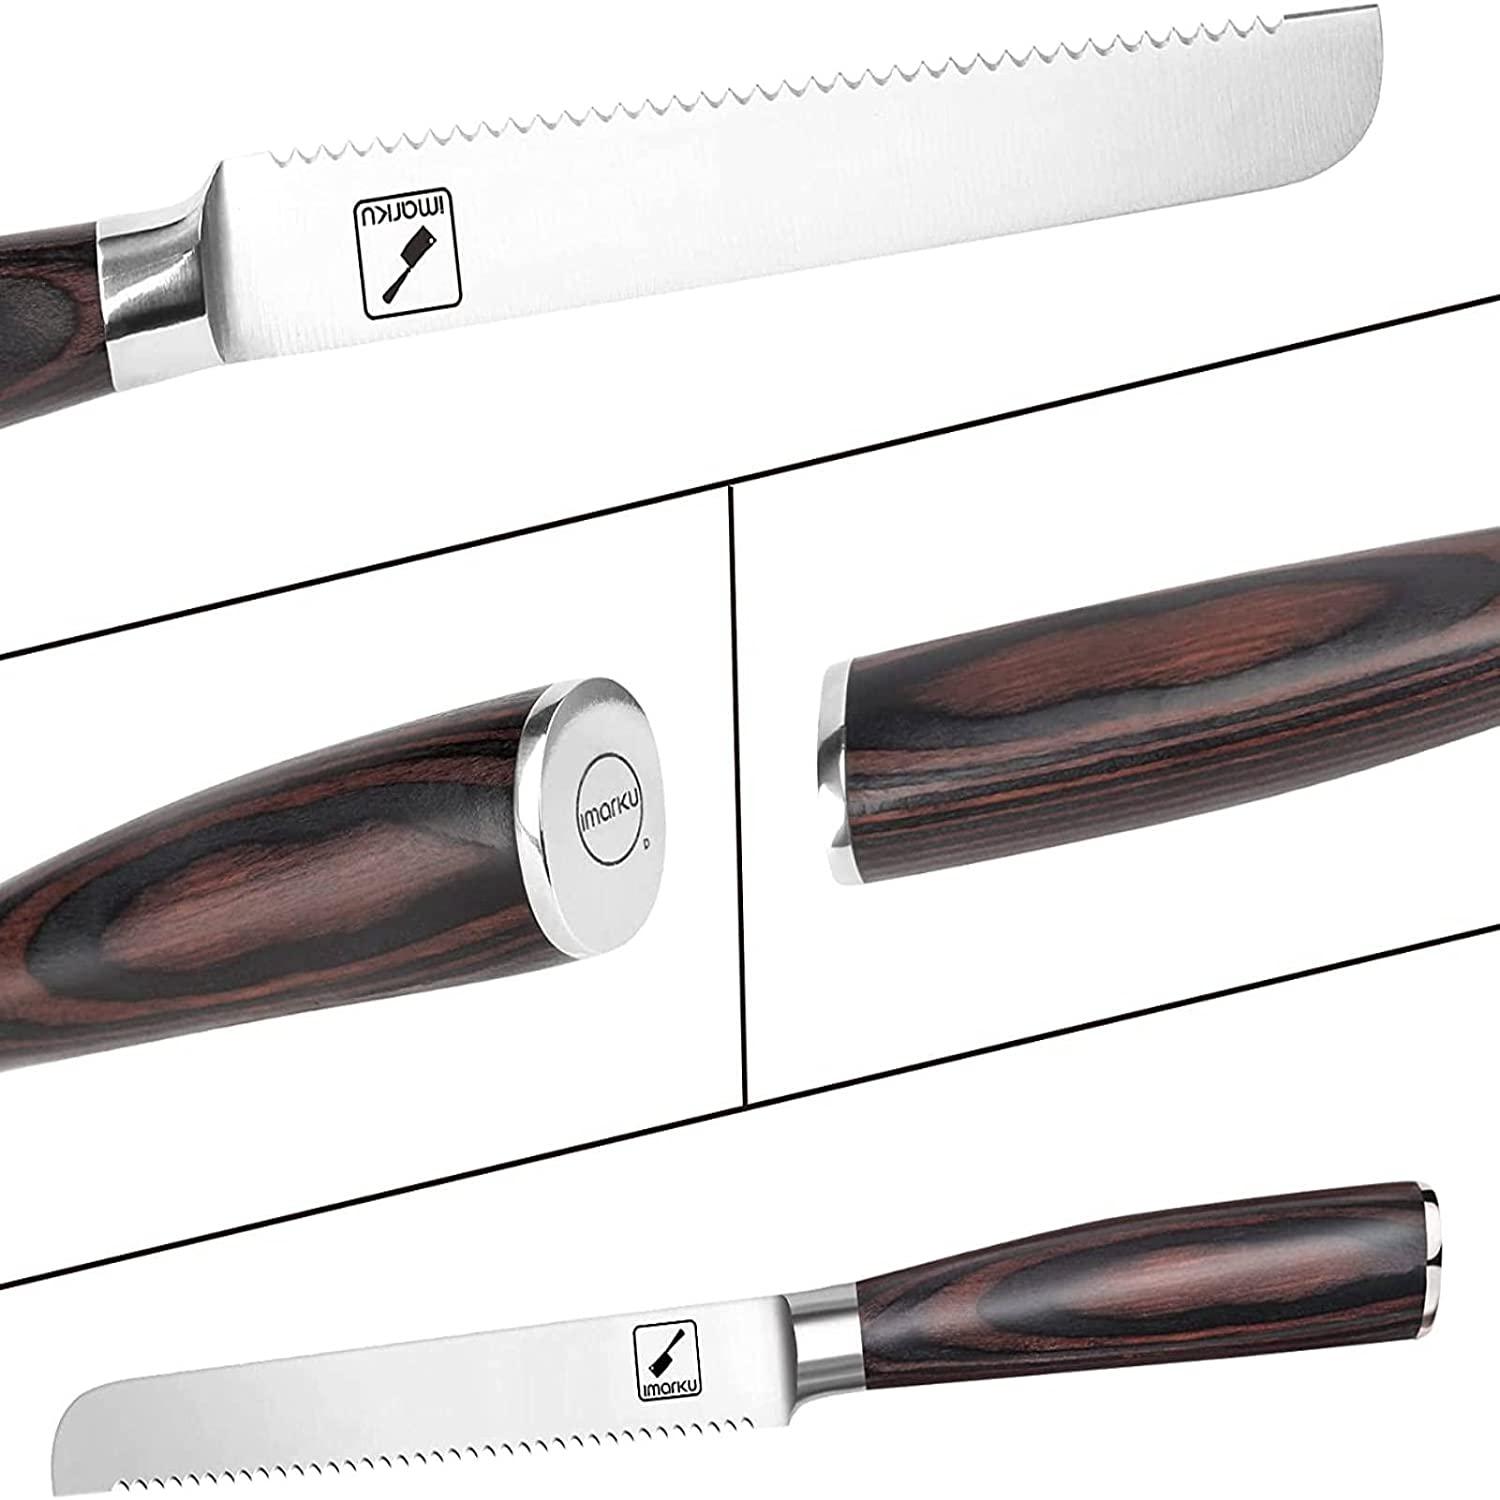 4 - 5 Steak Knives